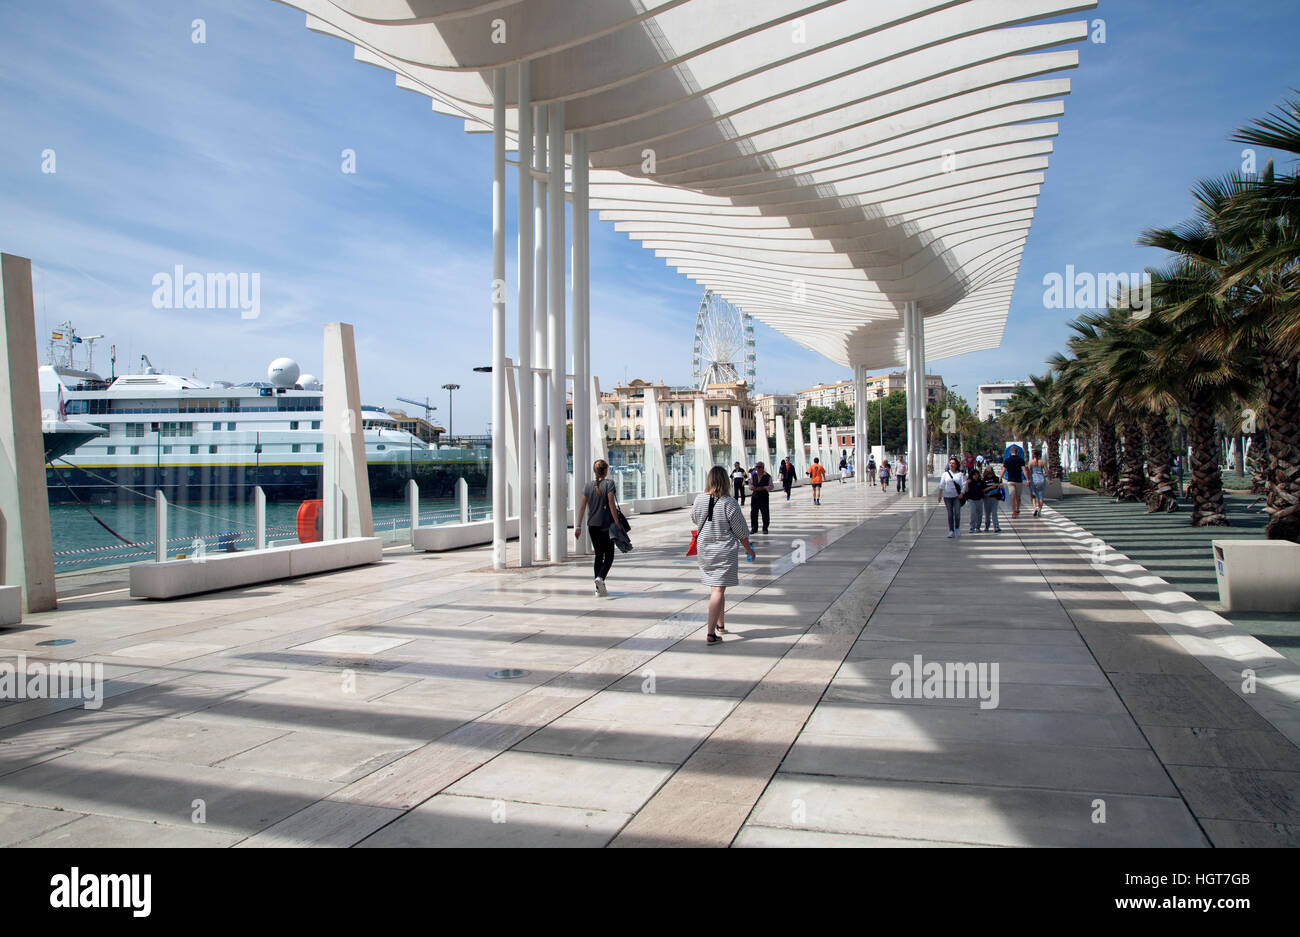 Am Hafen von Malaga, Spanien Stockfoto